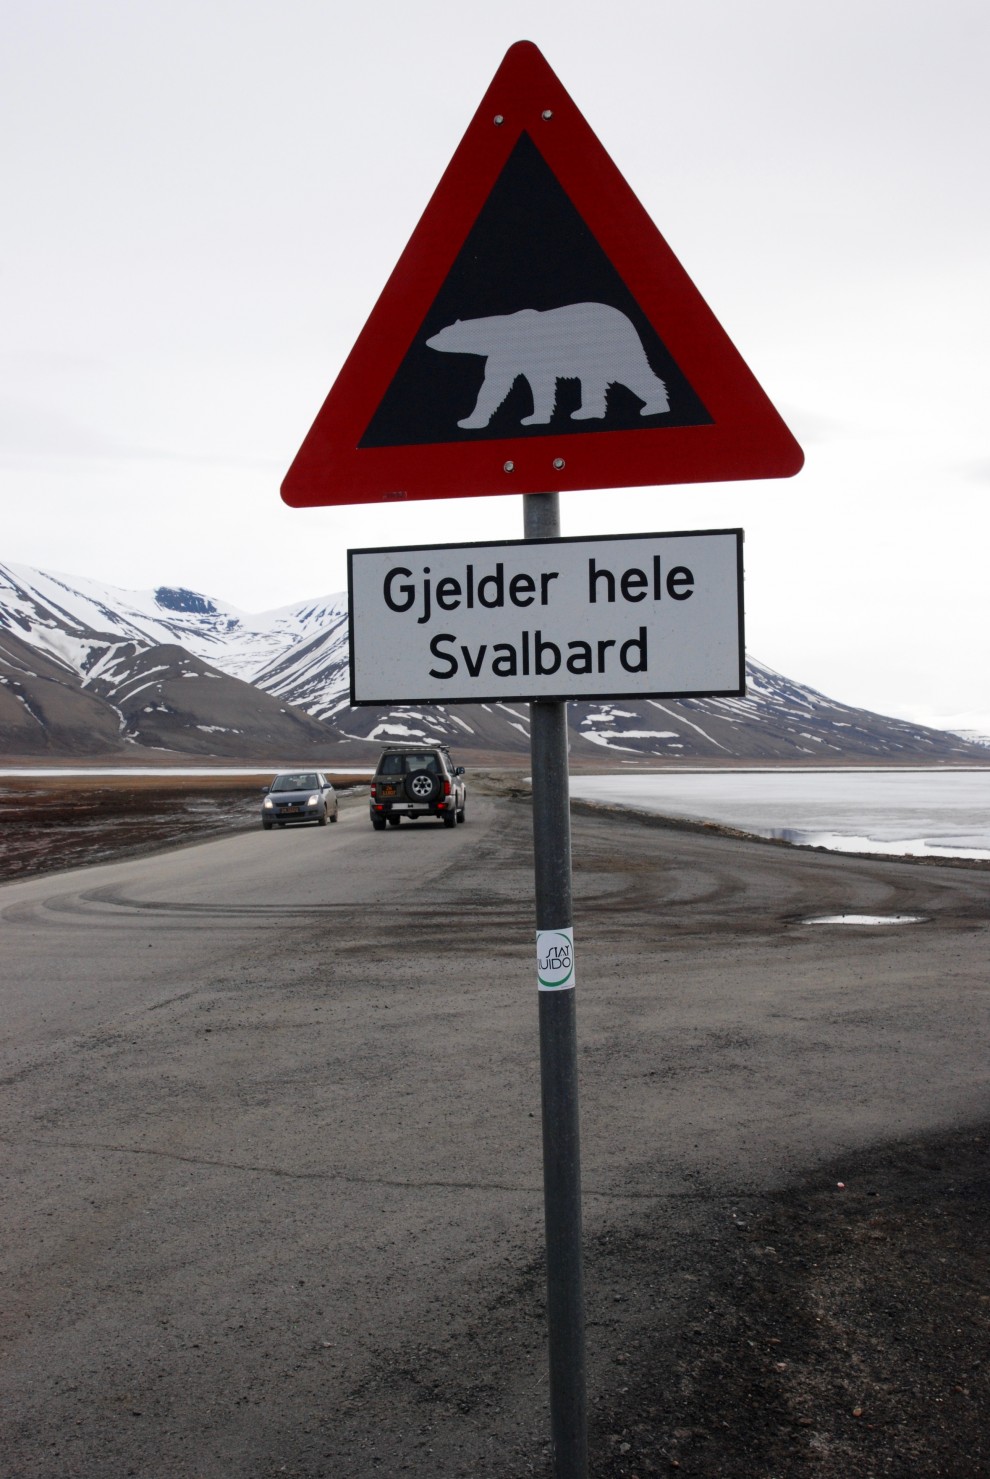 “Attenzione, orsi in tutte le Svalbard”, segnala il cartello